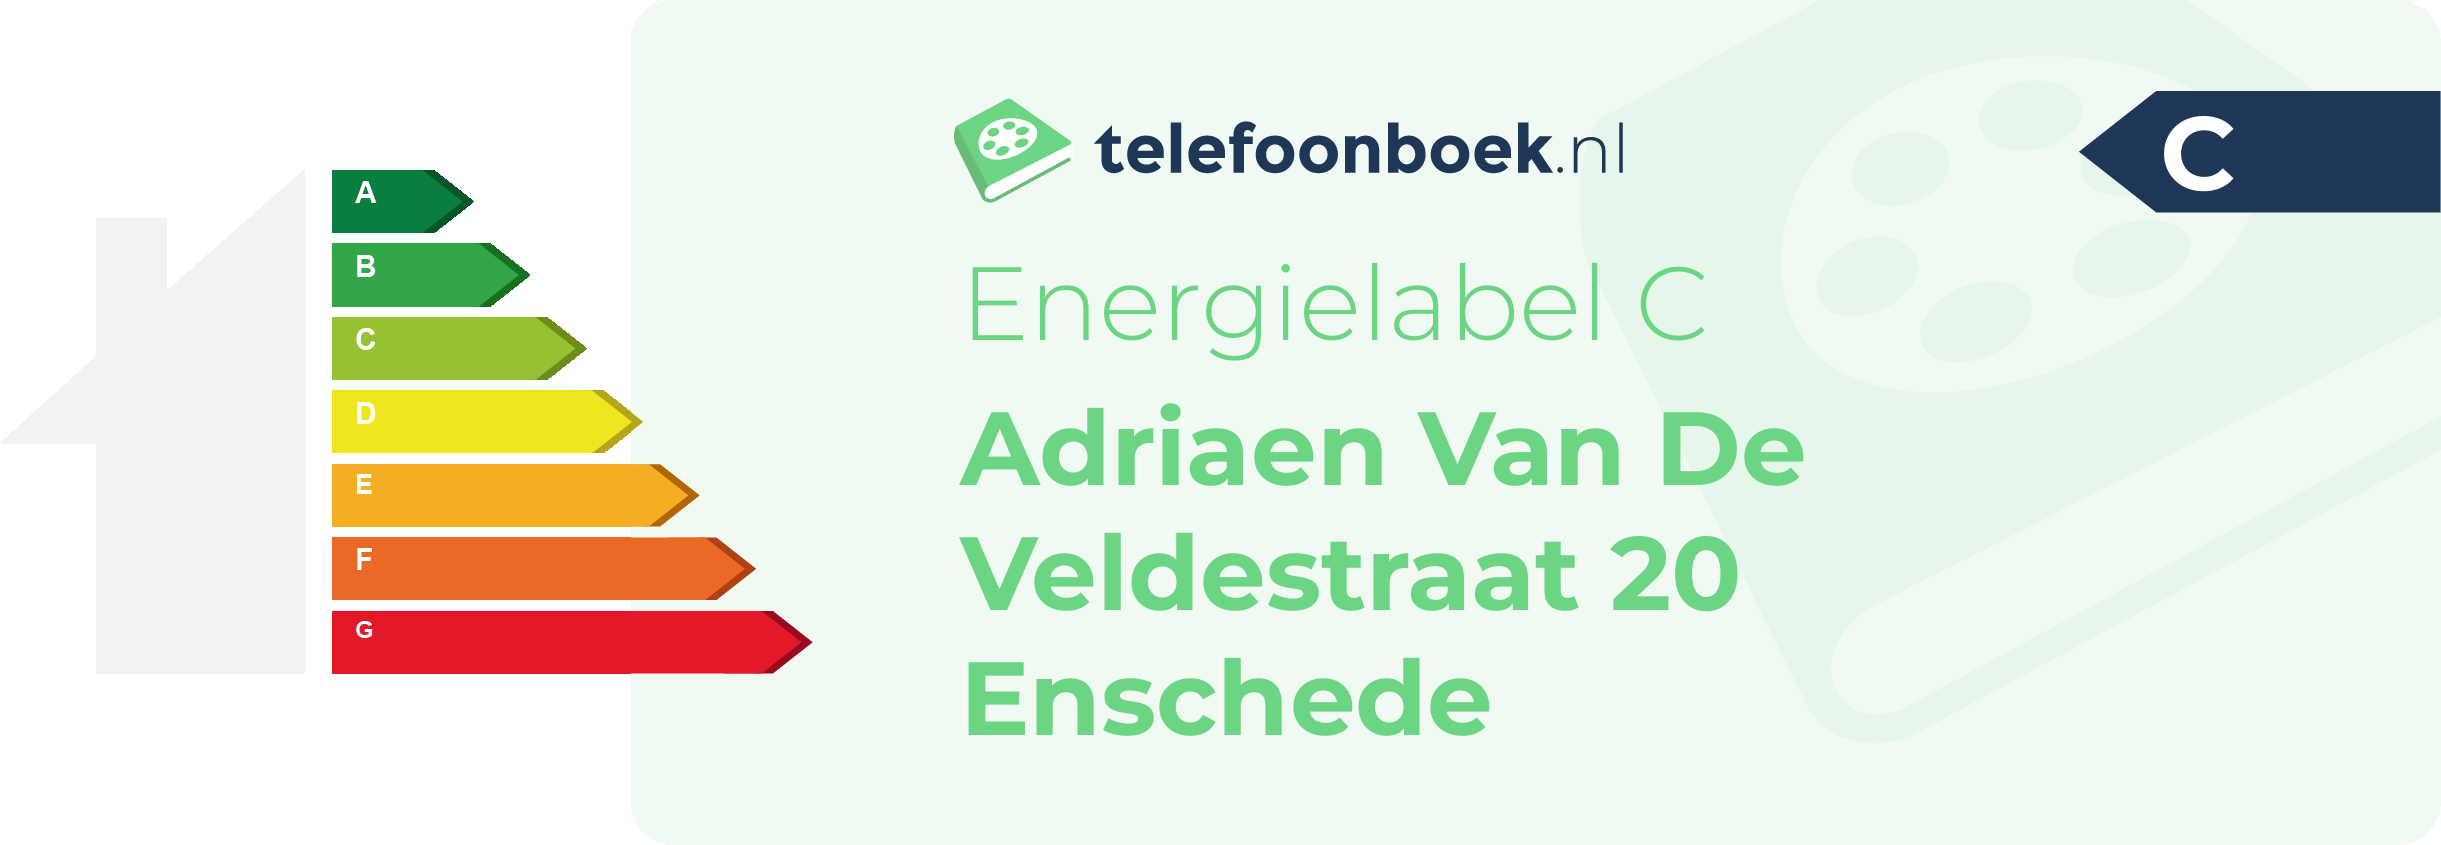 Energielabel Adriaen Van De Veldestraat 20 Enschede